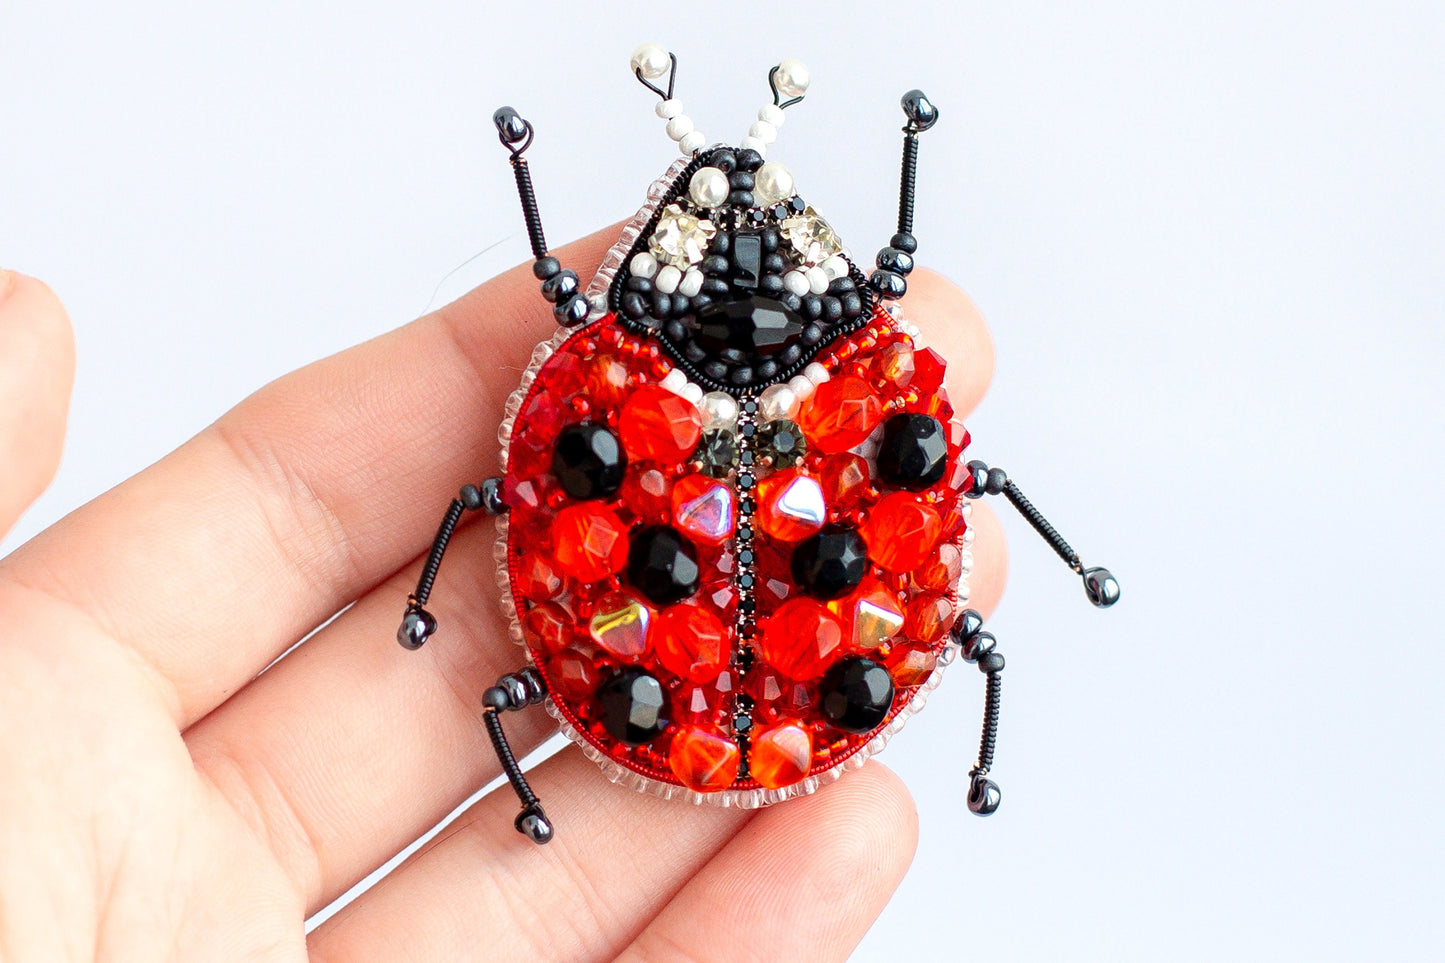 Ladybug Bead embroidery kit. Seed Bead Brooch kit. DIY Craft kit. Beadweaving Kit. Needlework beading. Handmade Jewelry Making Kit